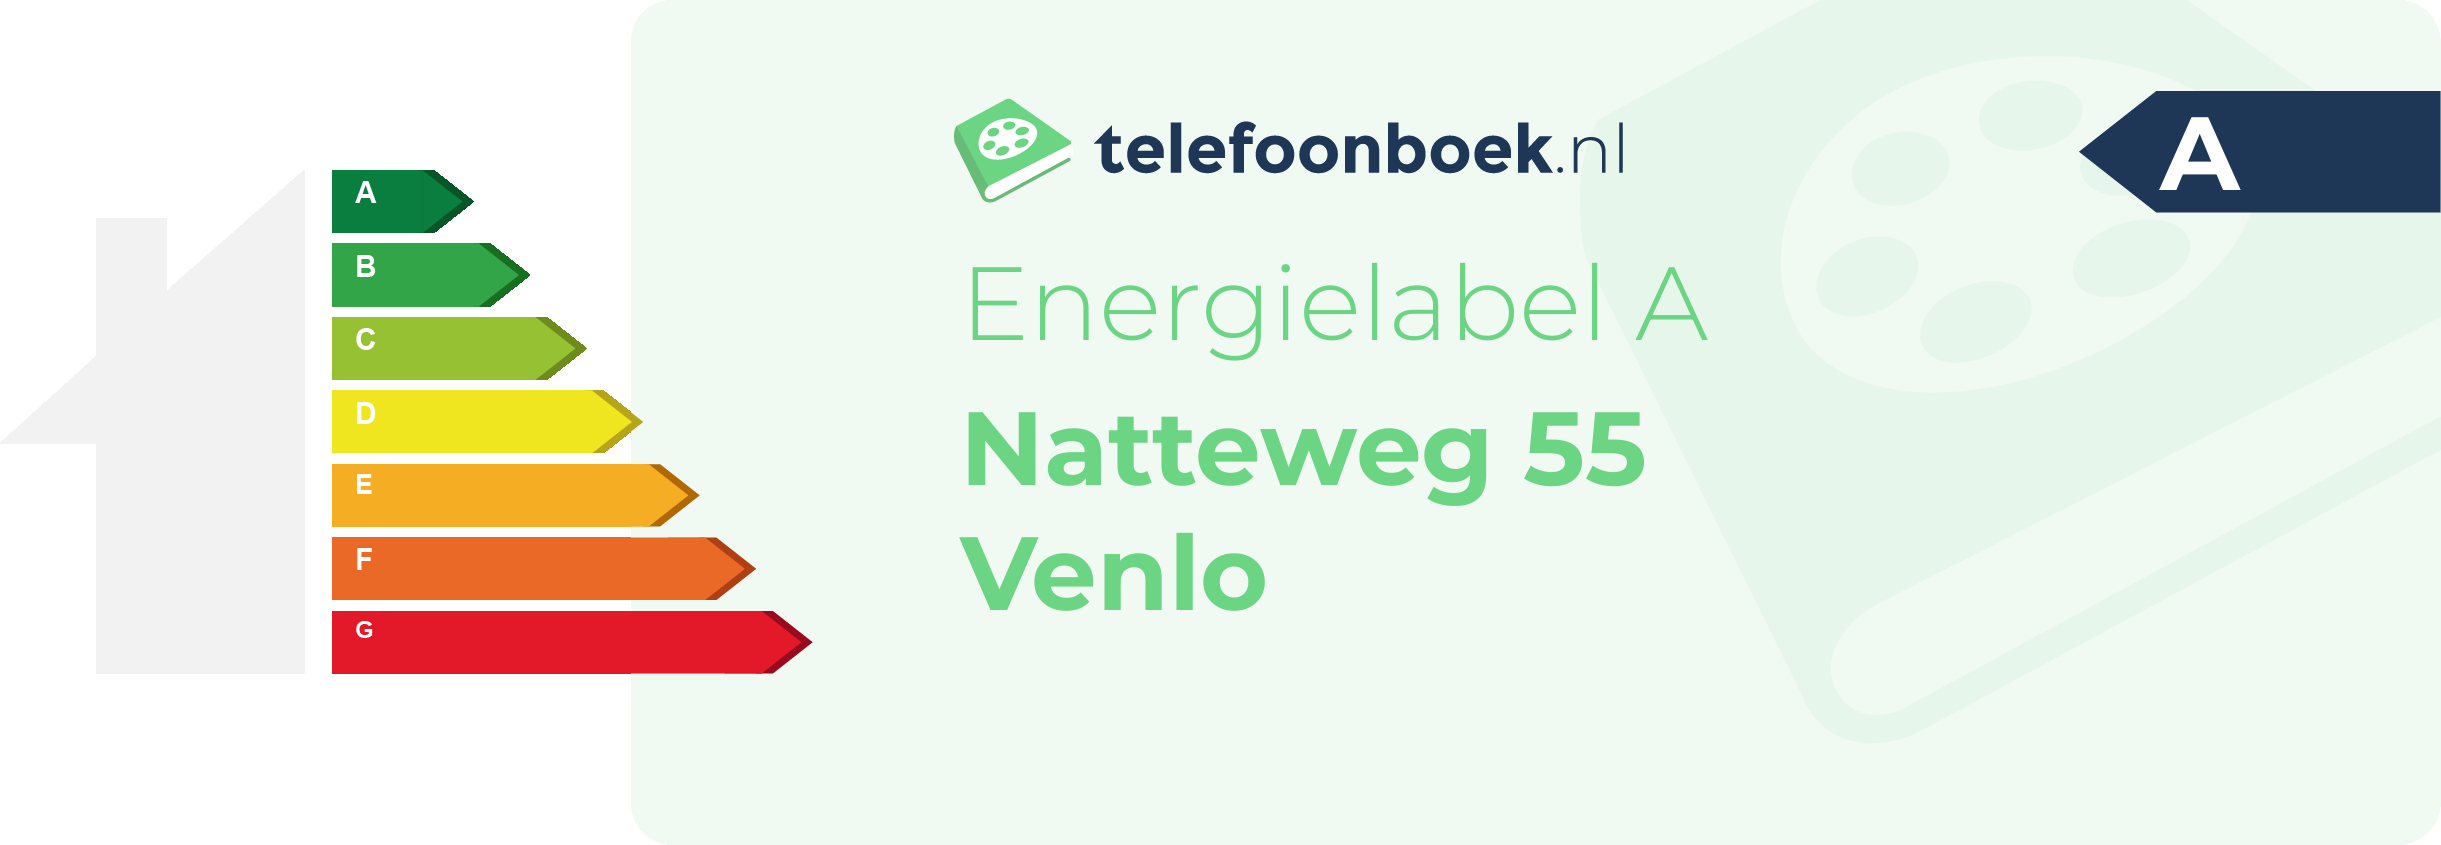 Energielabel Natteweg 55 Venlo